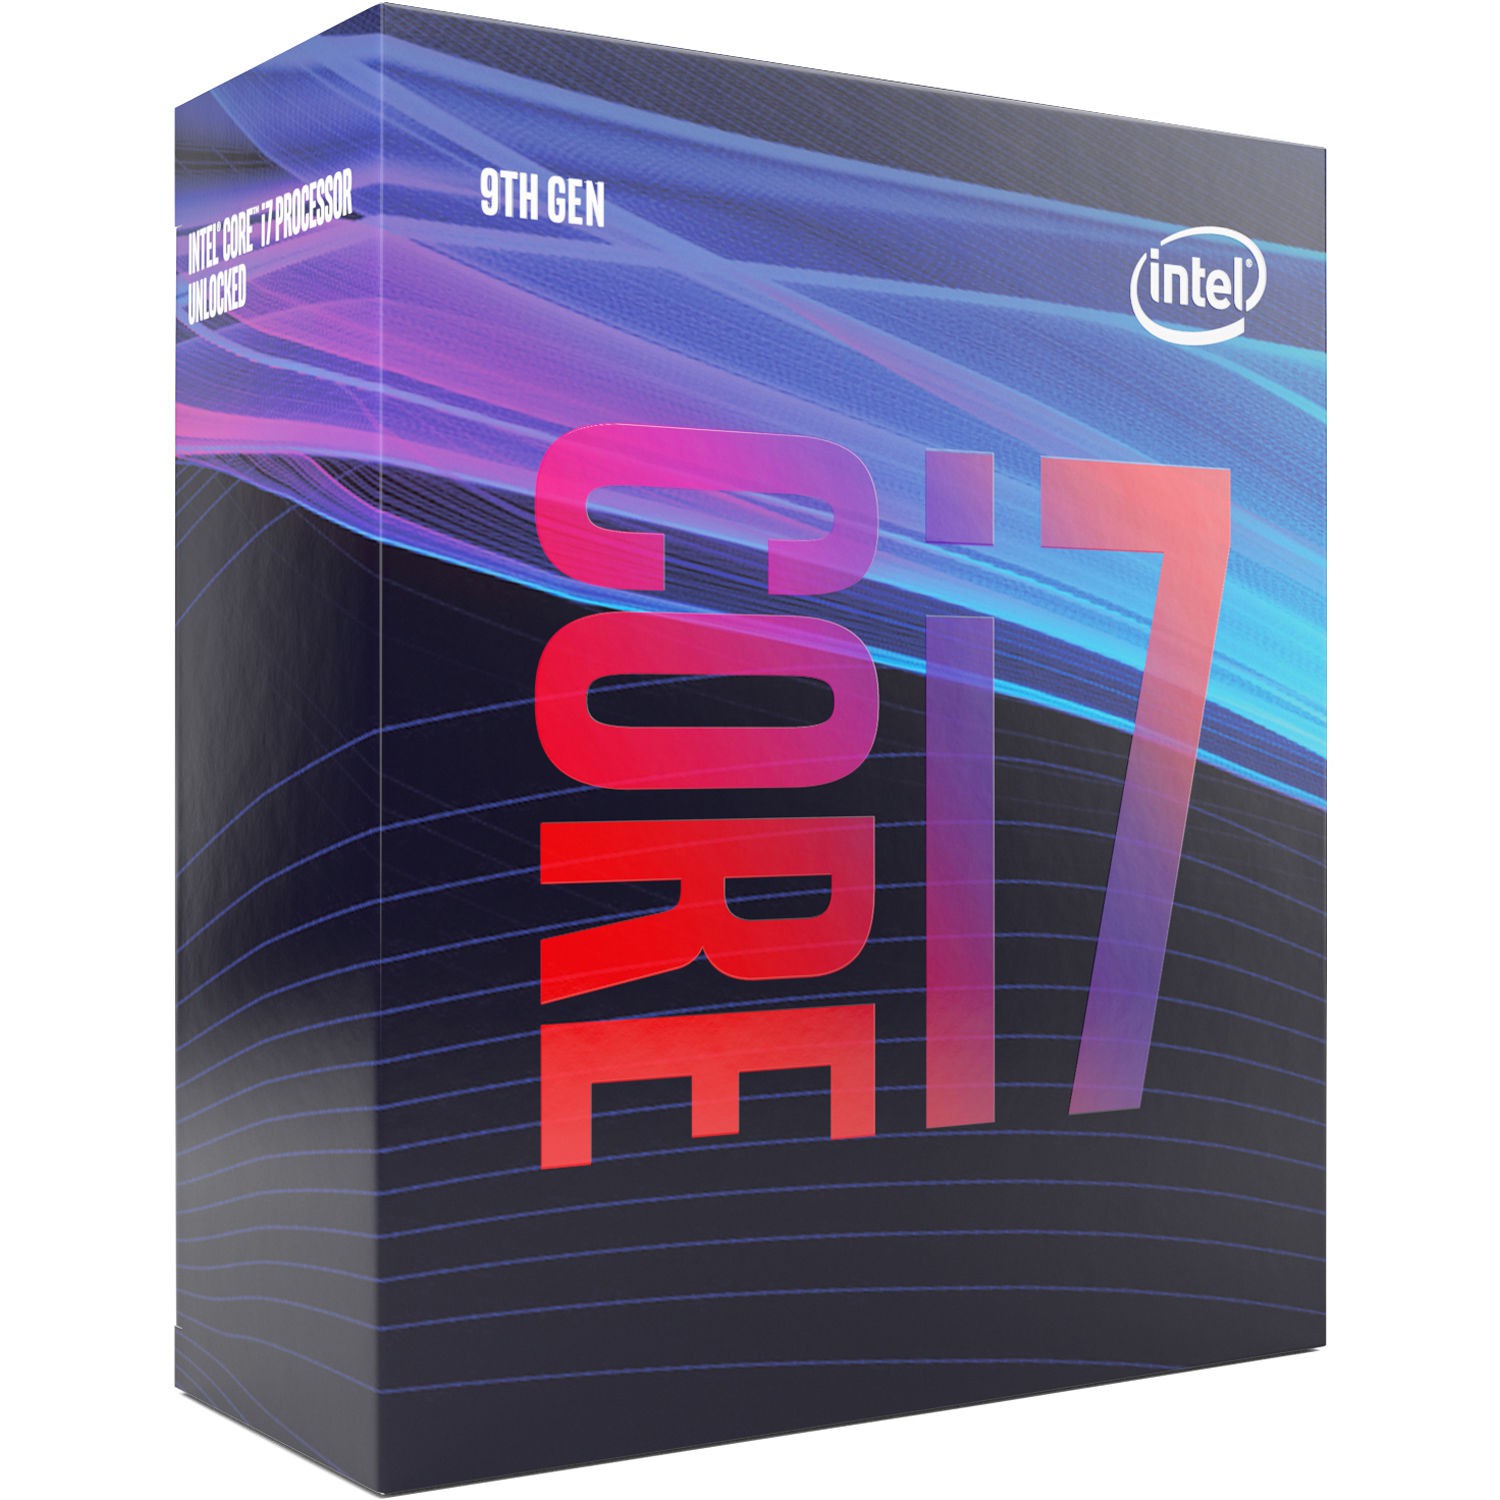 Процессор Intel Core i7-9700 (BOX) BX80684I79700 3.0(4.7)GHz, 8 ядер/8 потоков, 12Mb, Intel UHD 630, 65W (Soc1151)